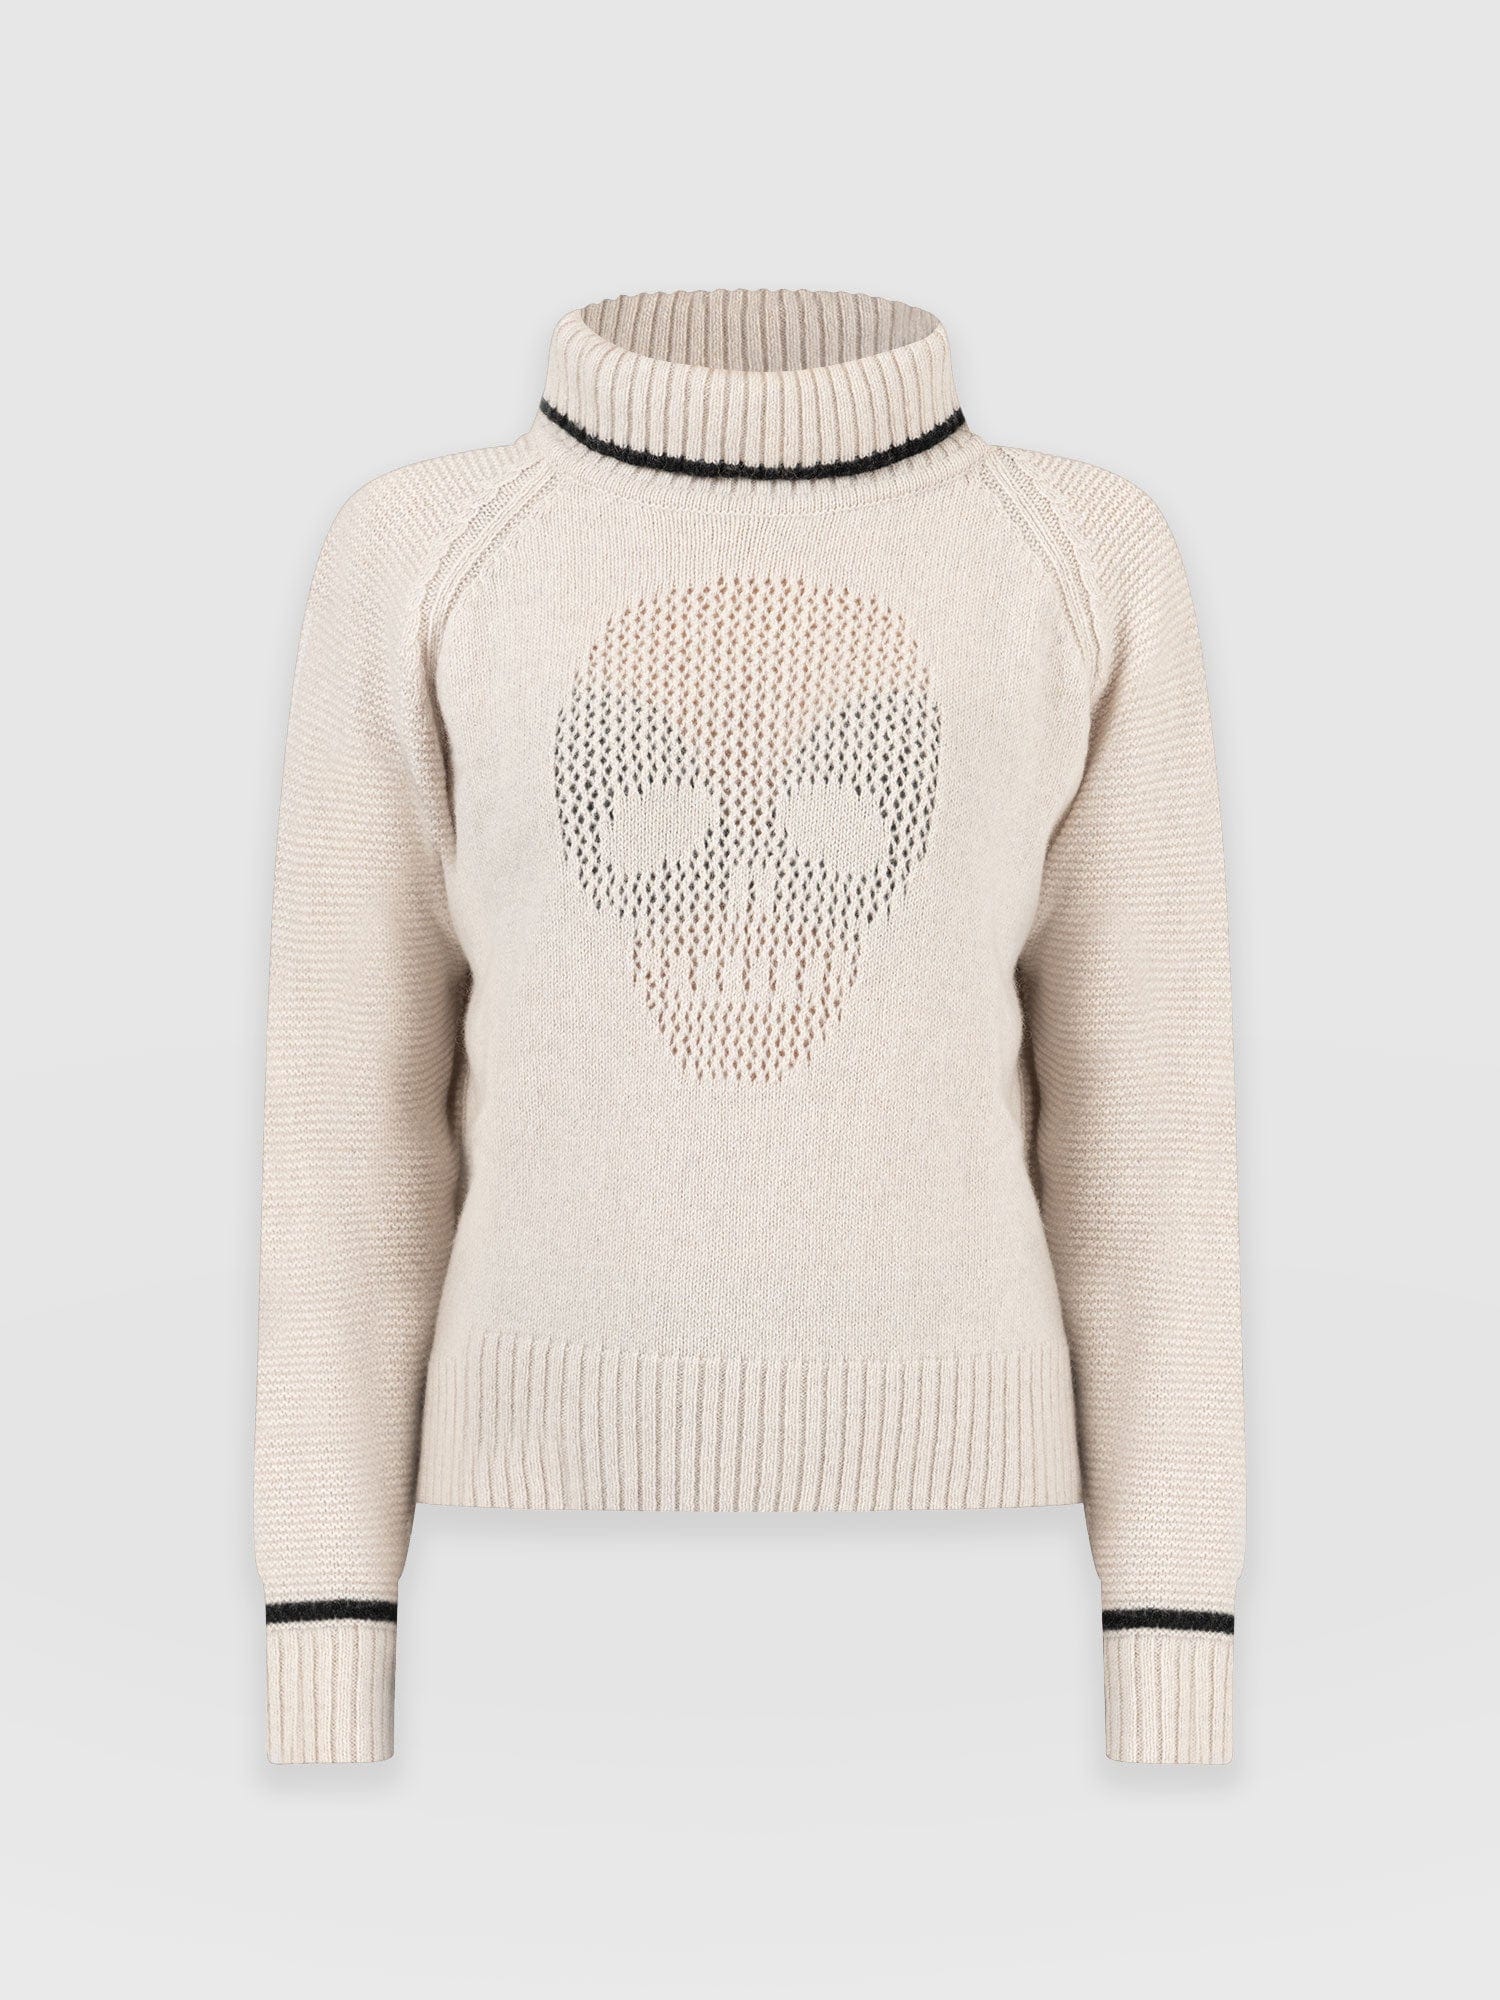 Blake Cashmere Skull Sweater Cream - Women's Sweaters | Saint + ...